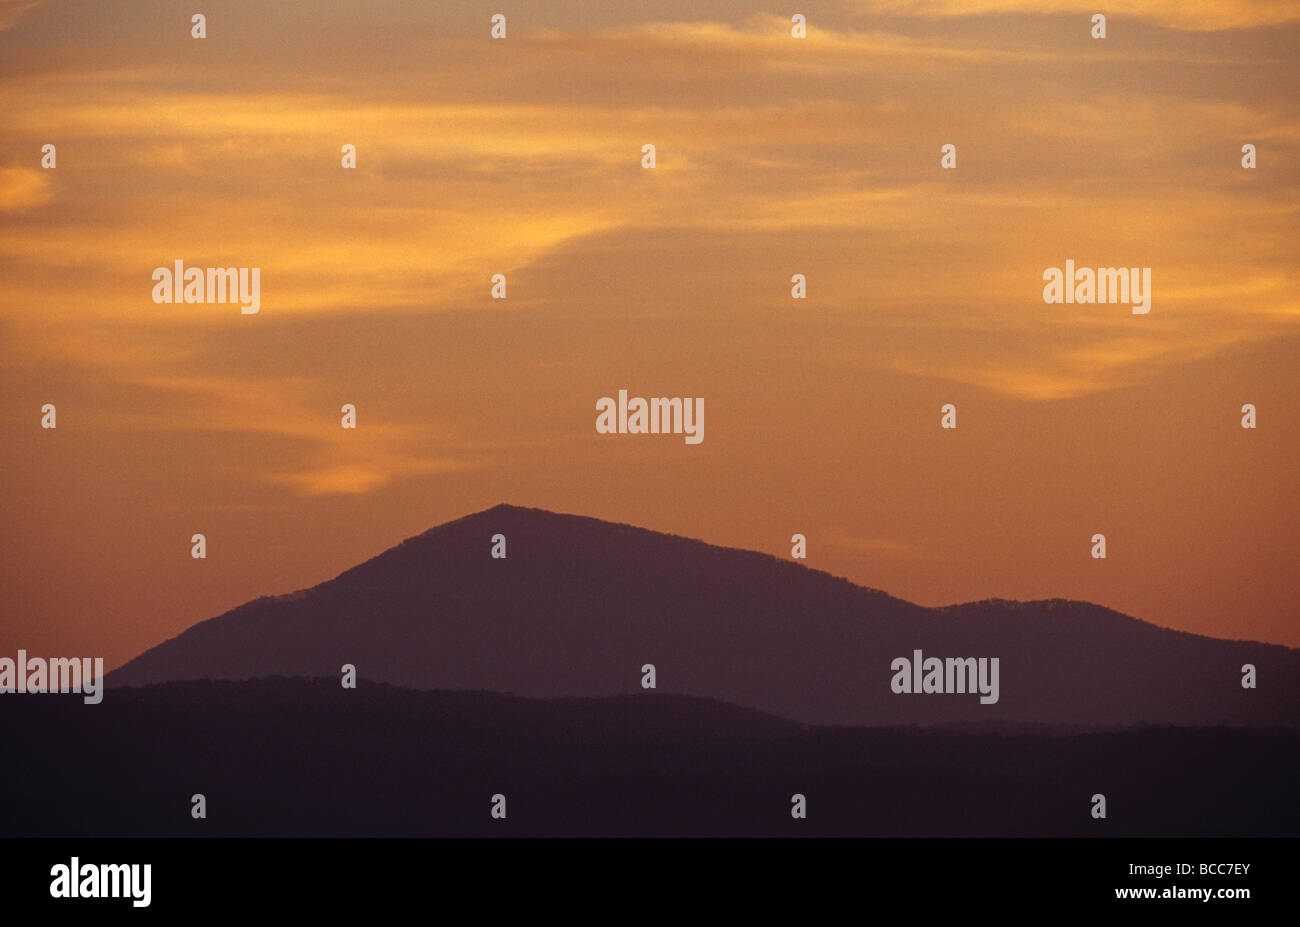 Die Silhouette eines steilen Berges gegen einen spektakulären Sonnenuntergang. Stockfoto